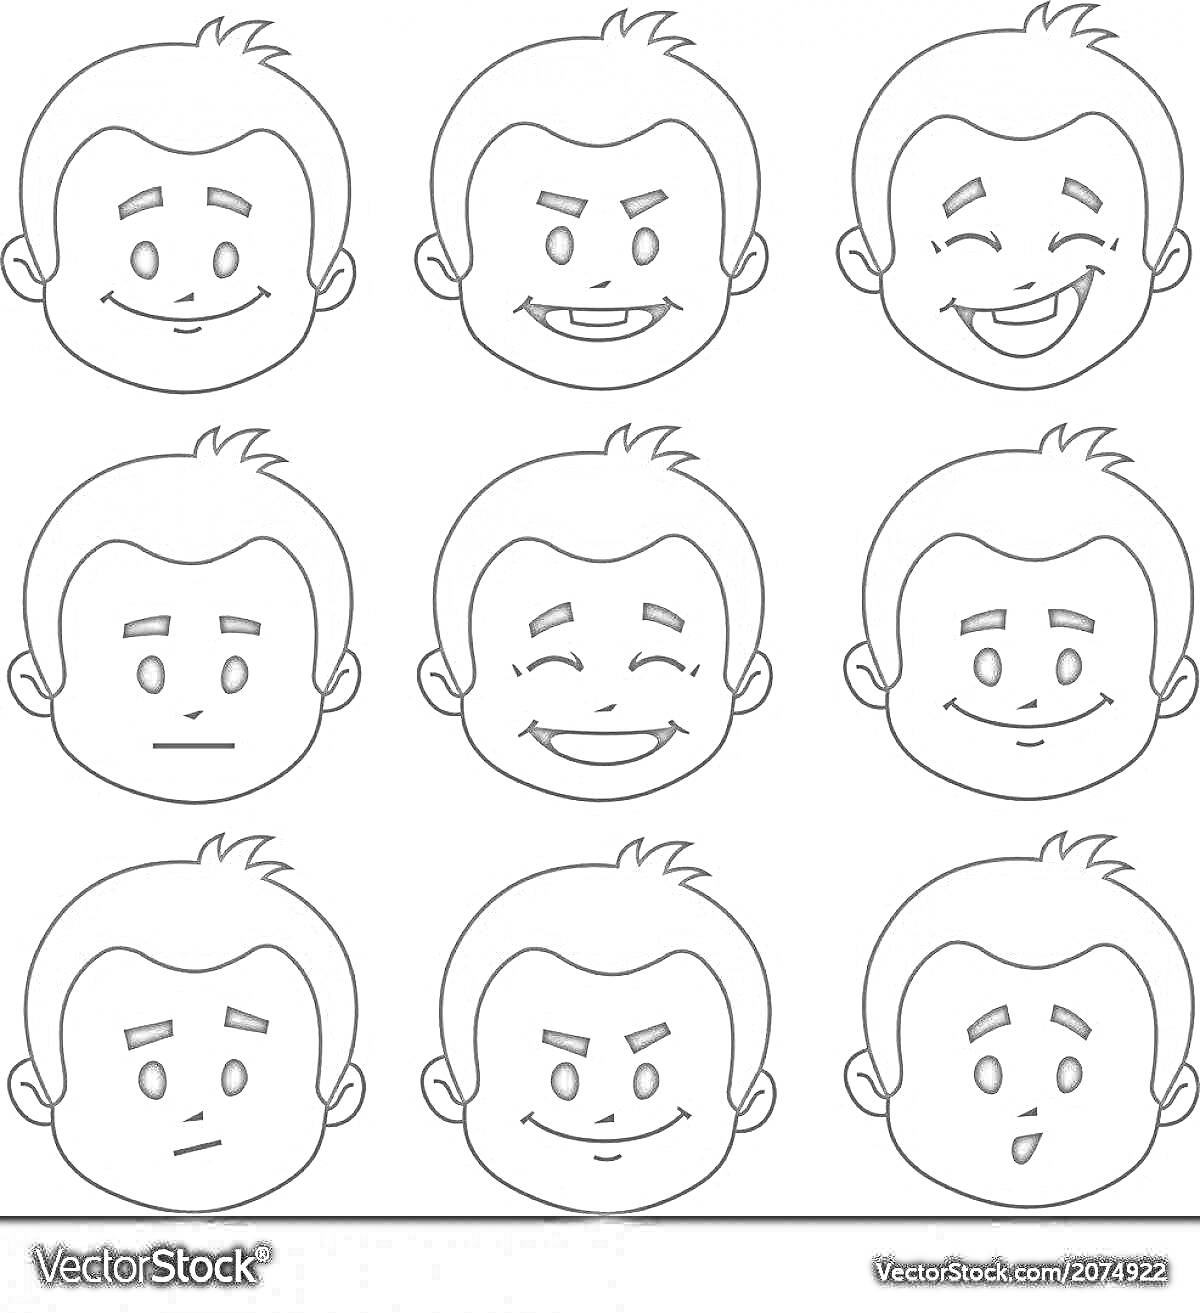 Раскраска Сет из девяти выражений лица персонажа с различными эмоциями (счастье, злость, смех, нейтральное, грусть, улыбка, удивление, задумчивость, испуг)